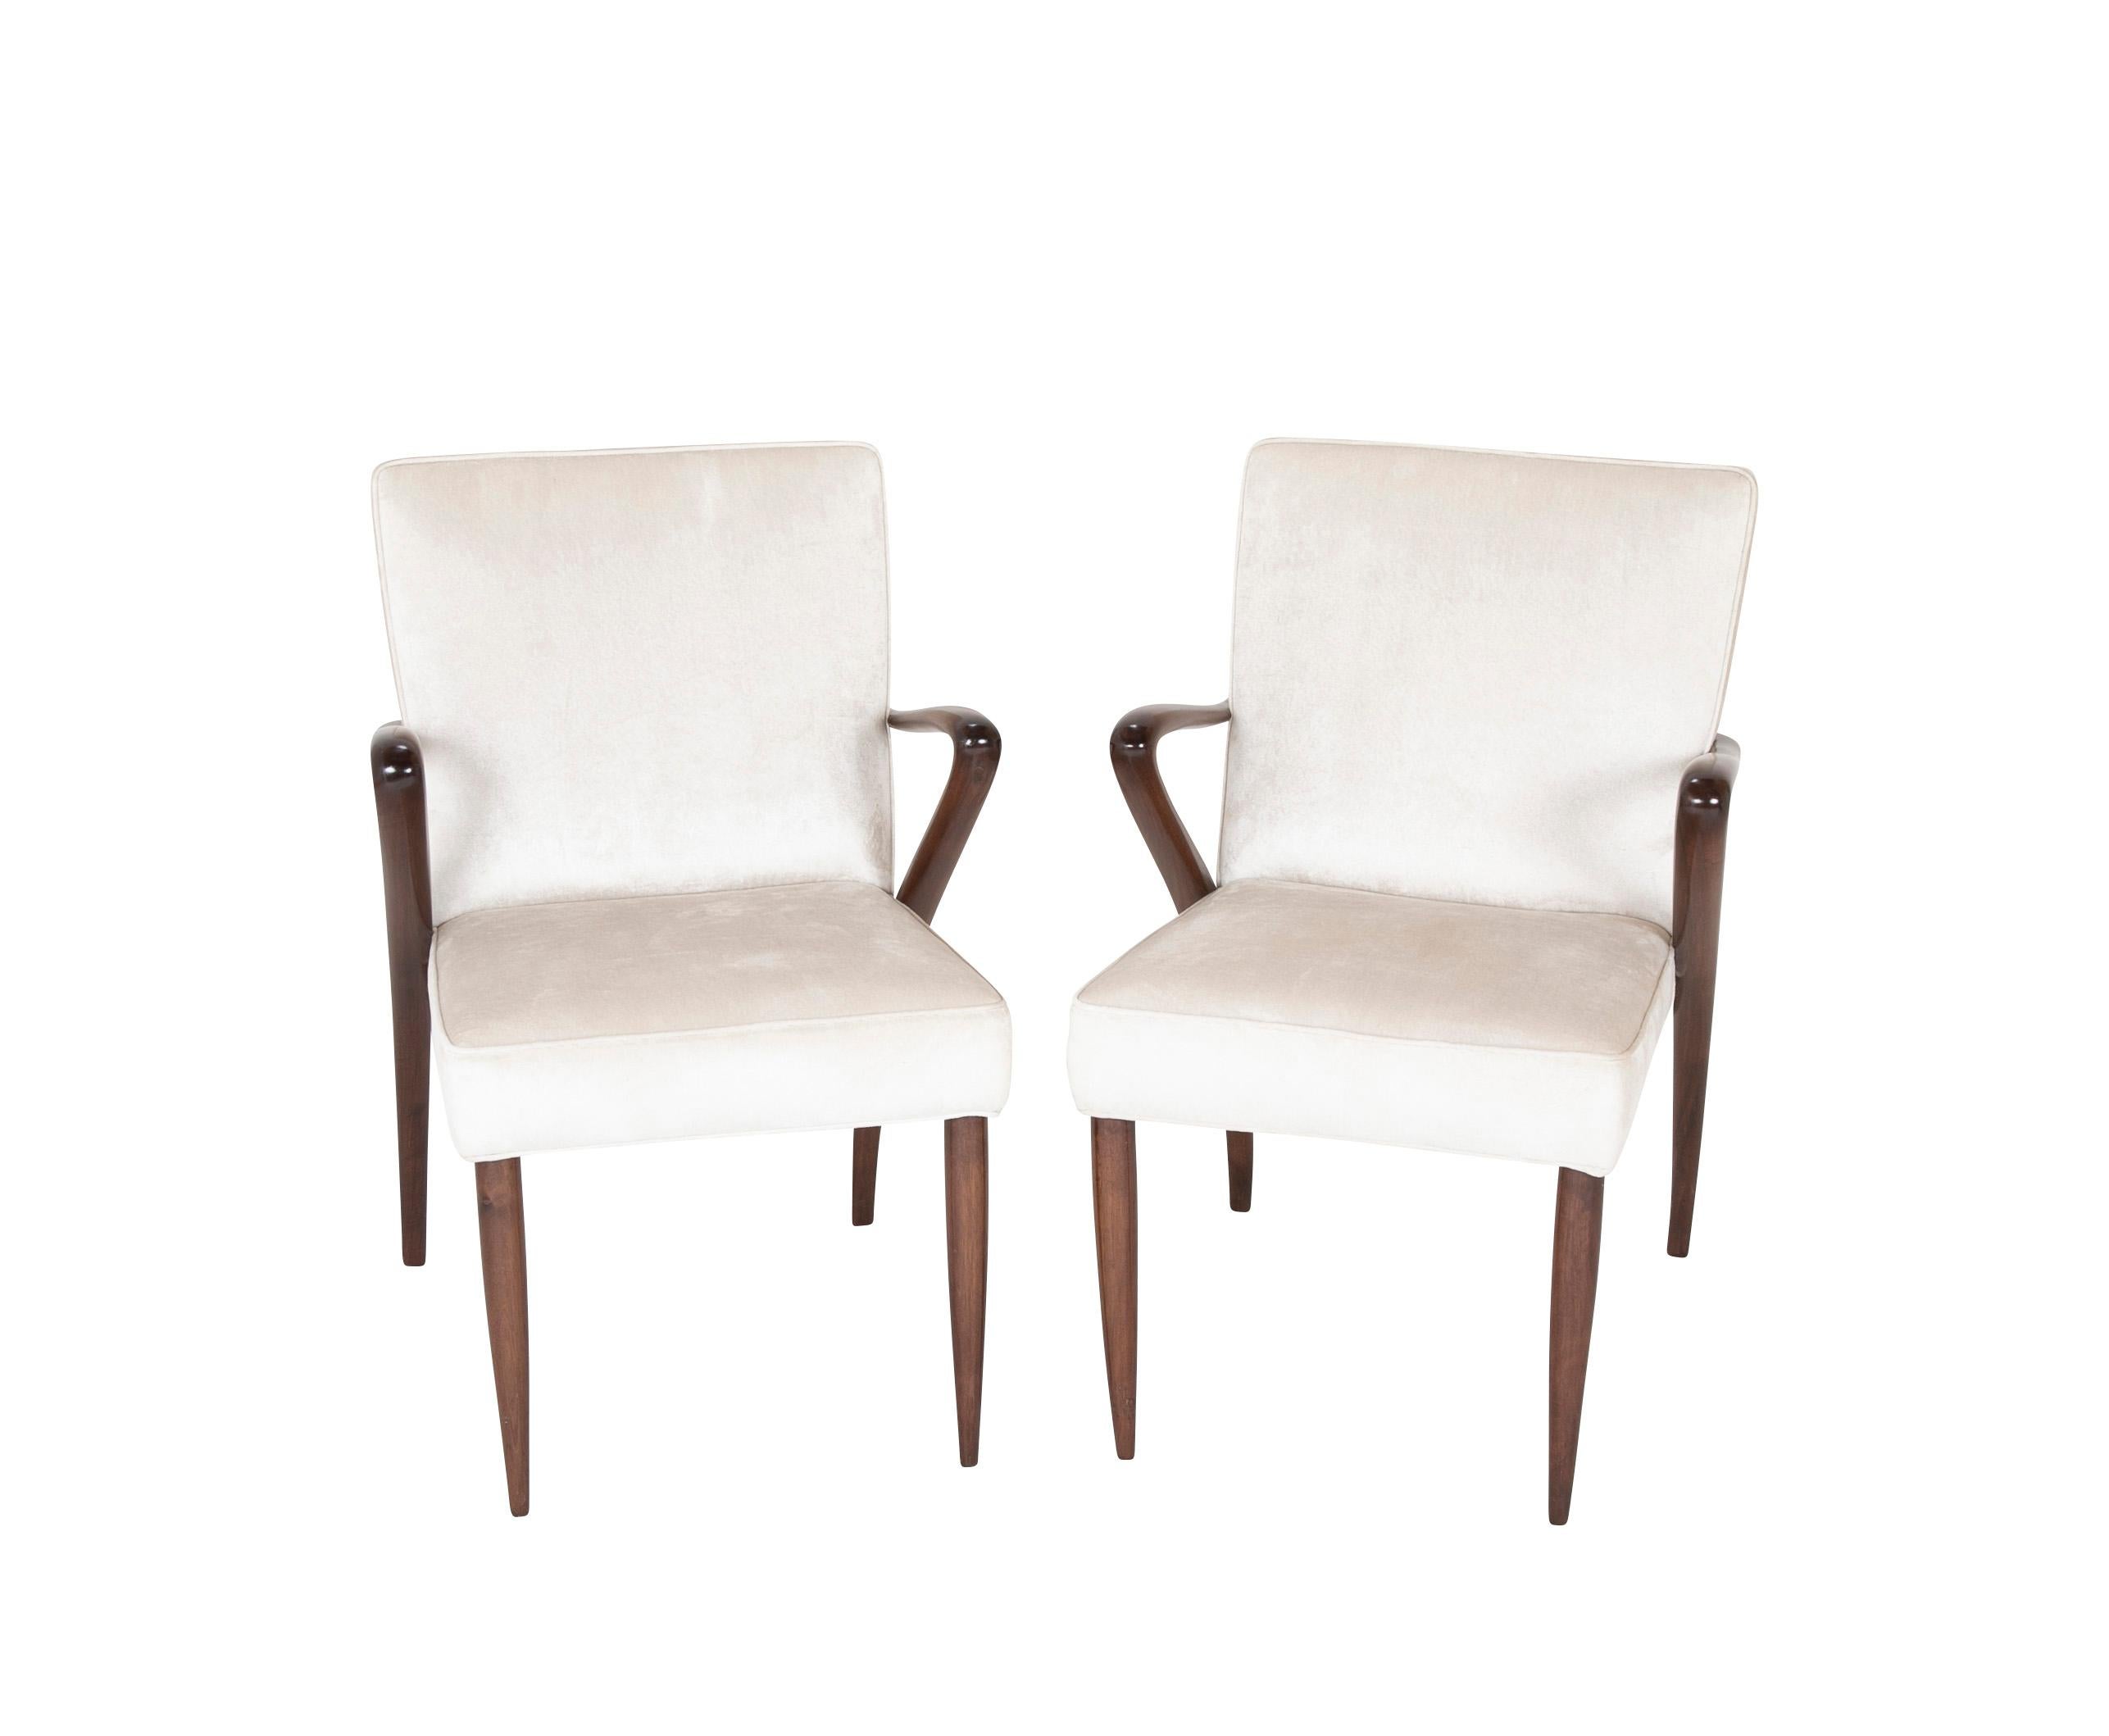 Pair of armchairs in the manner of Osvaldo Borsani, (Italy, 1911-1985).